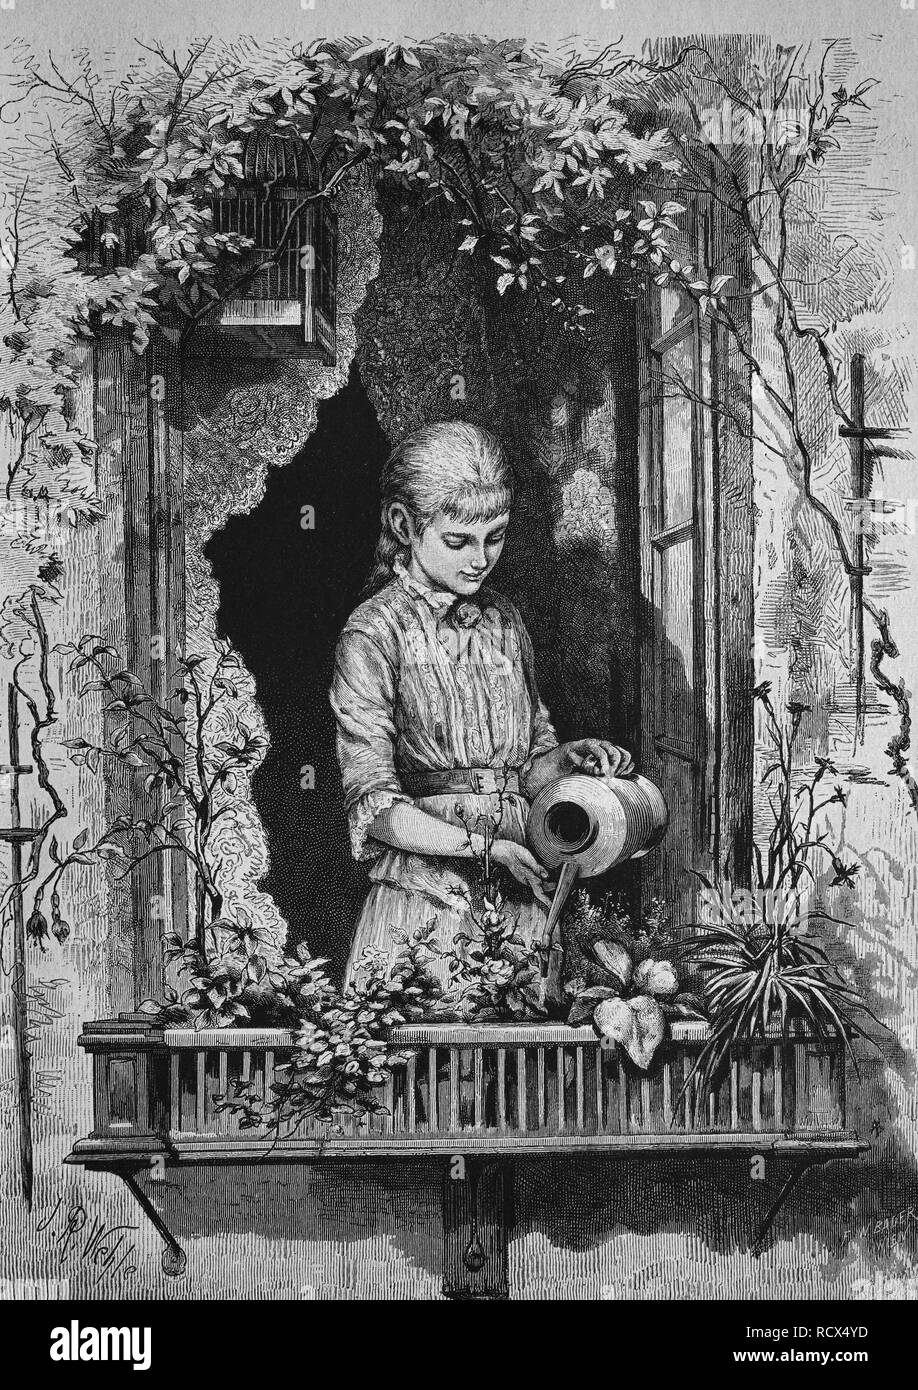 Arrosage des fleurs fille, gravure sur bois, 1880 Banque D'Images